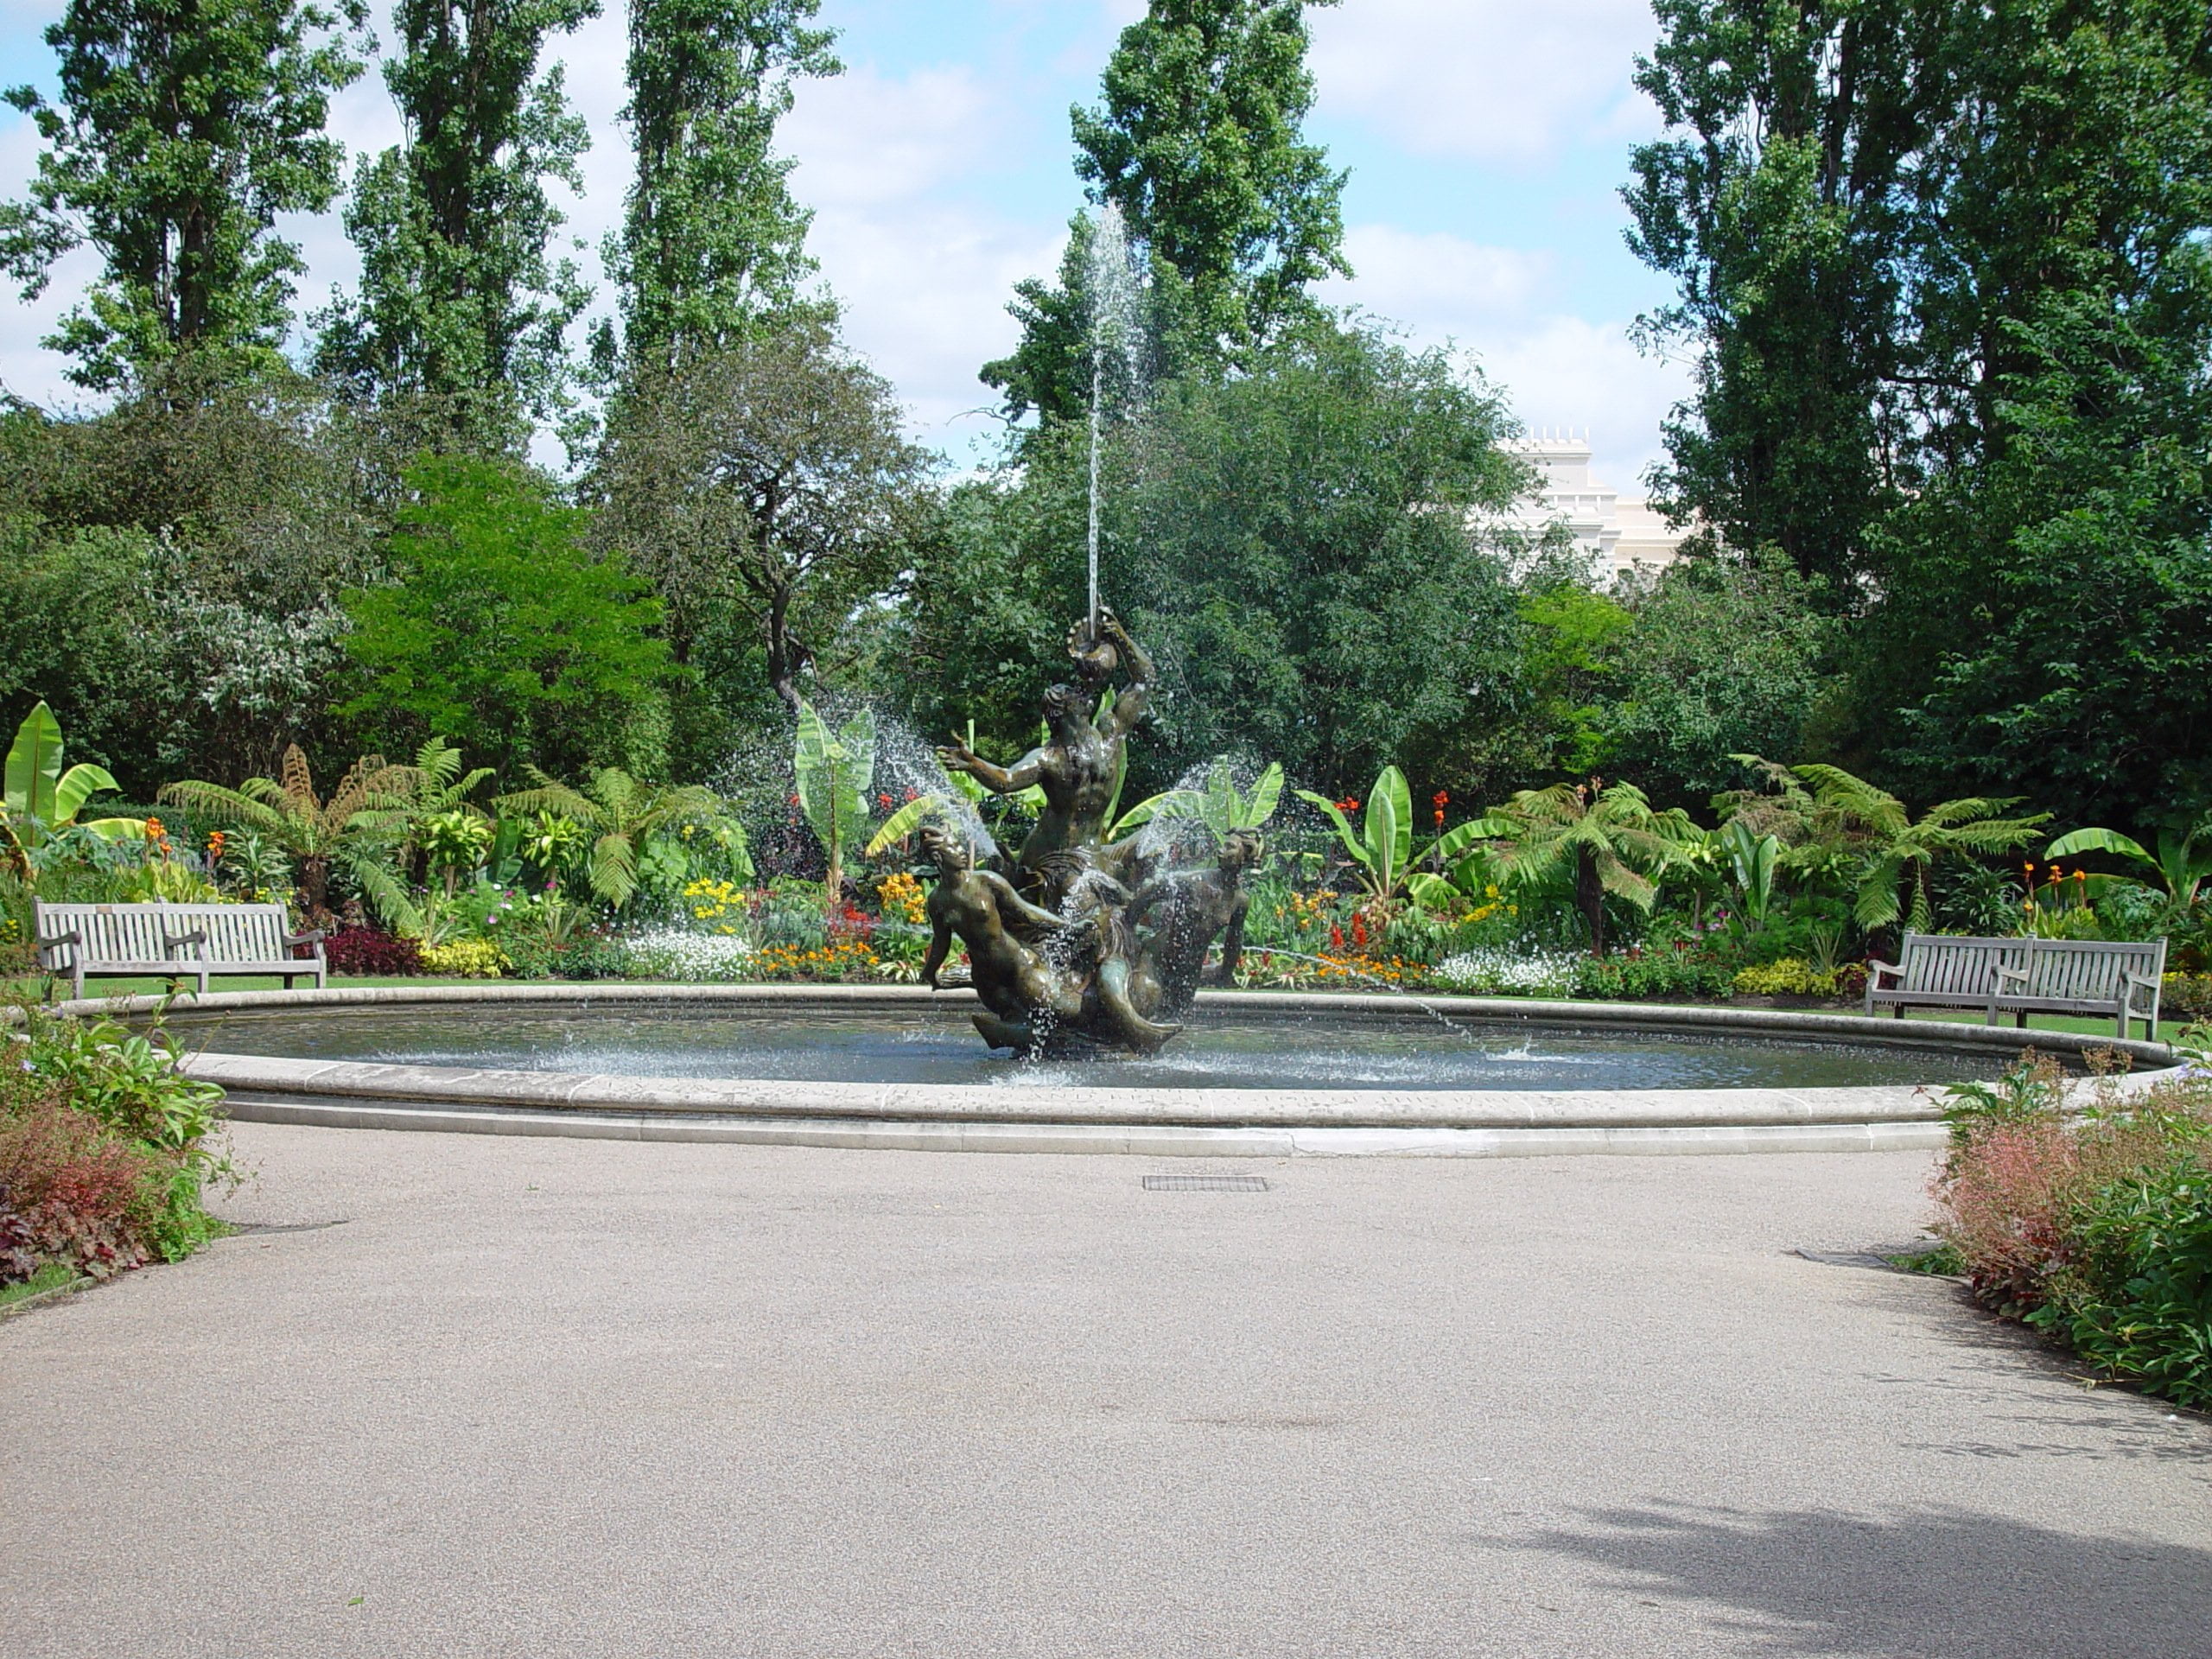 The Regent's Park